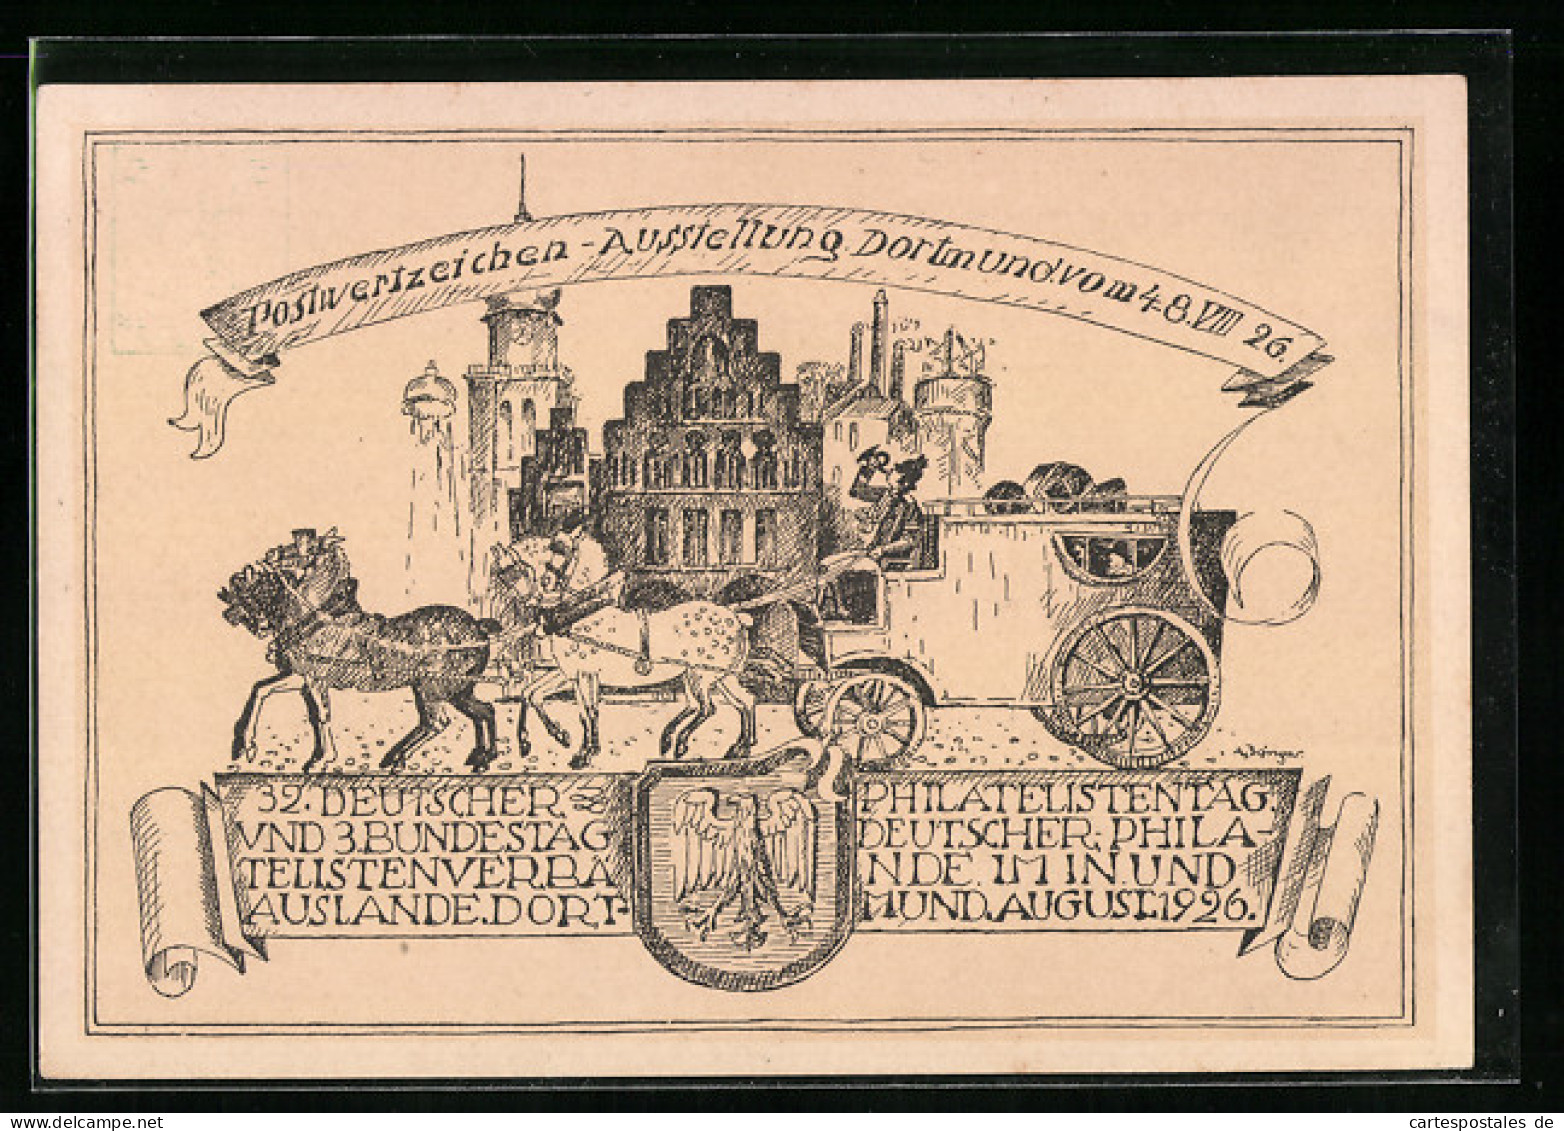 Künstler-AK Ganzsache PP81C16: Dortmund, Postwertzeichen-Ausstellung 1926, Postkutsche  - Briefmarken (Abbildungen)